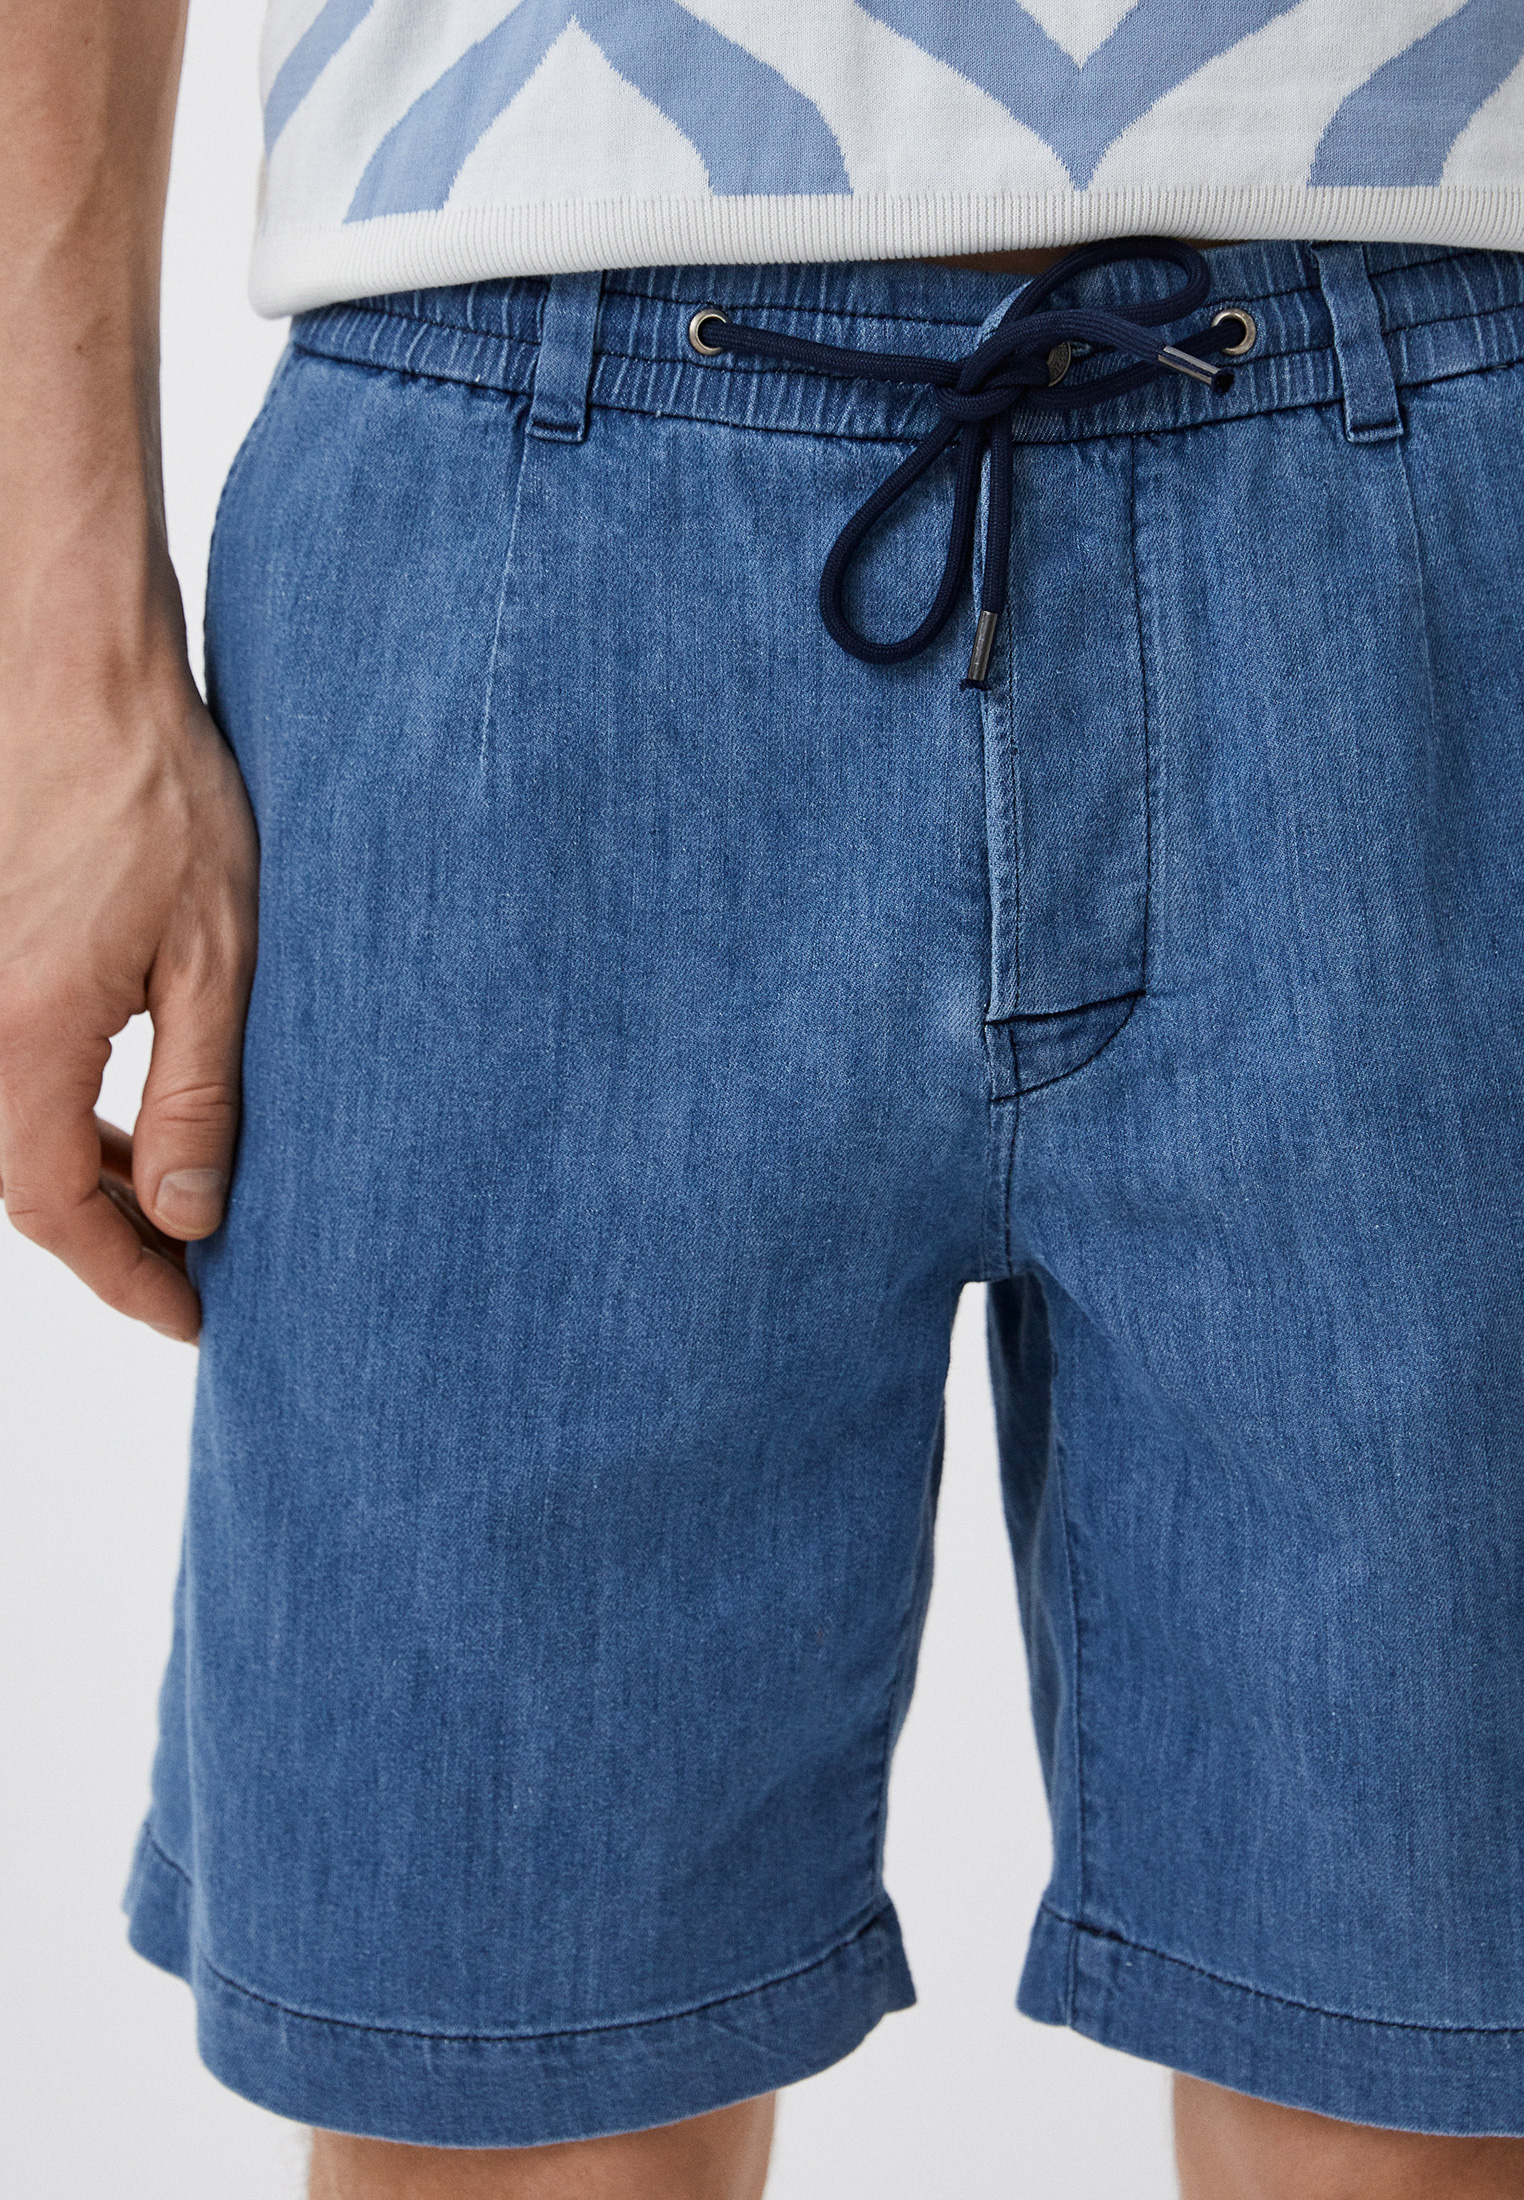 Мужские джинсовые шорты Bikkembergs (Биккембергс) C O 039 80 S 3780: изображение 4